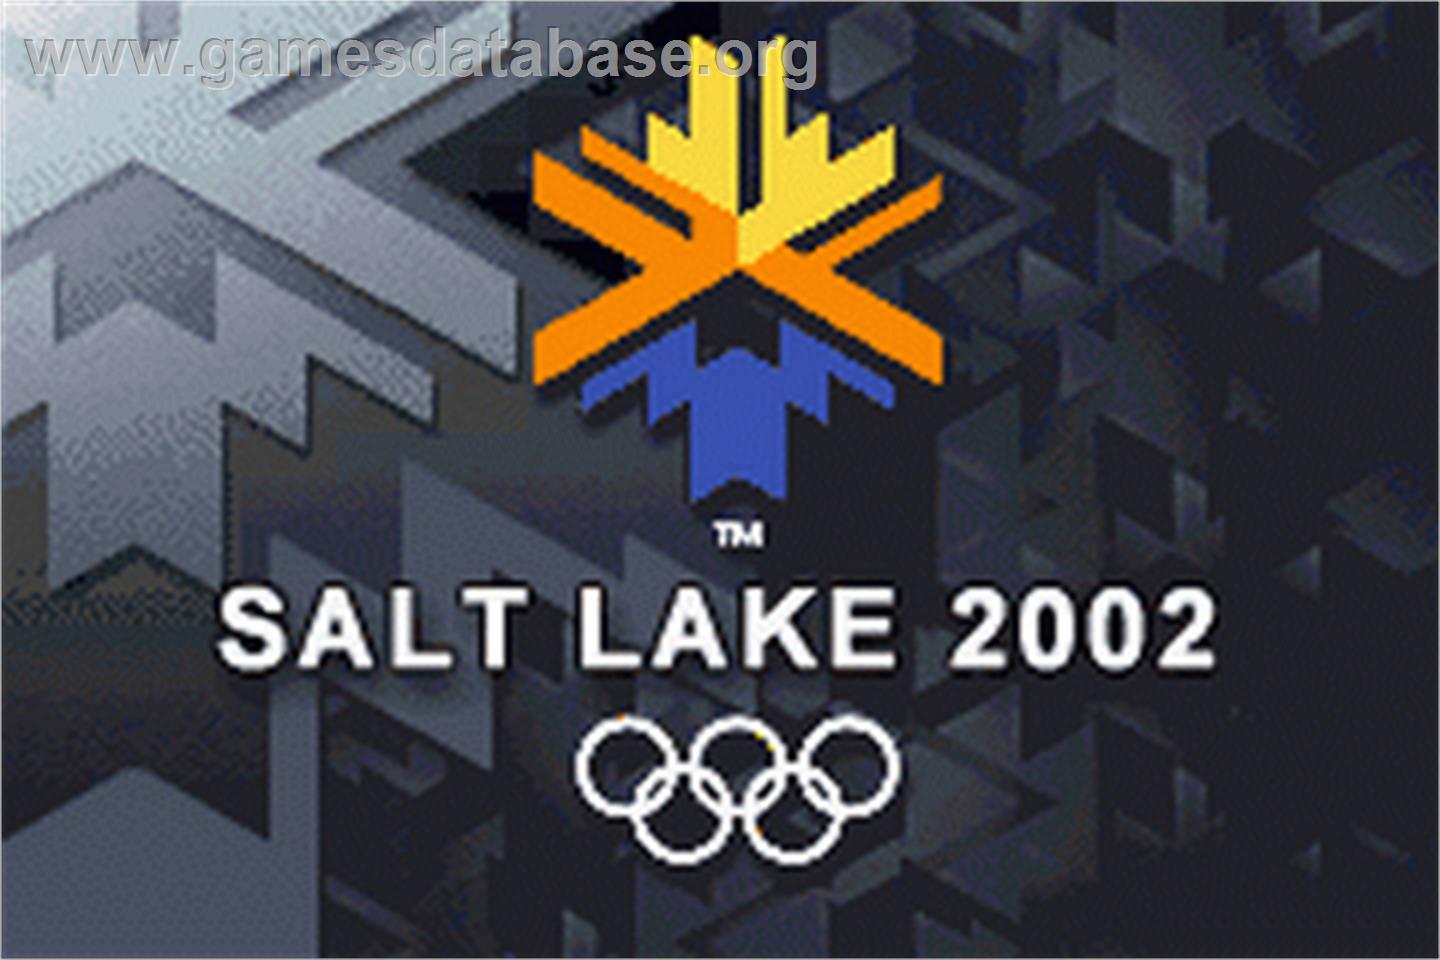 Salt Lake 2002 - Nintendo Game Boy Advance - Artwork - Title Screen